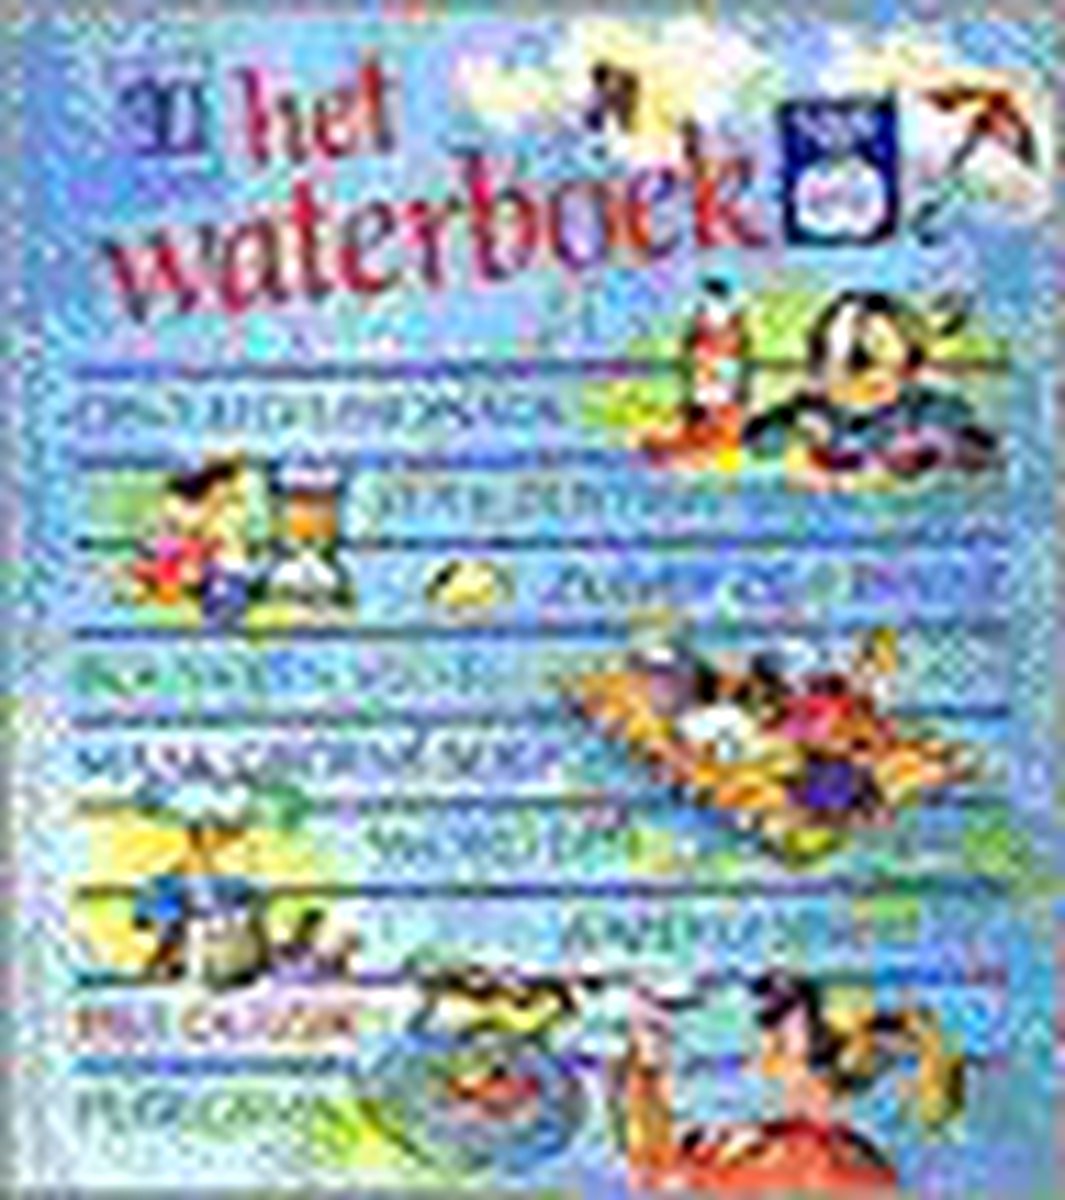 Het waterboek